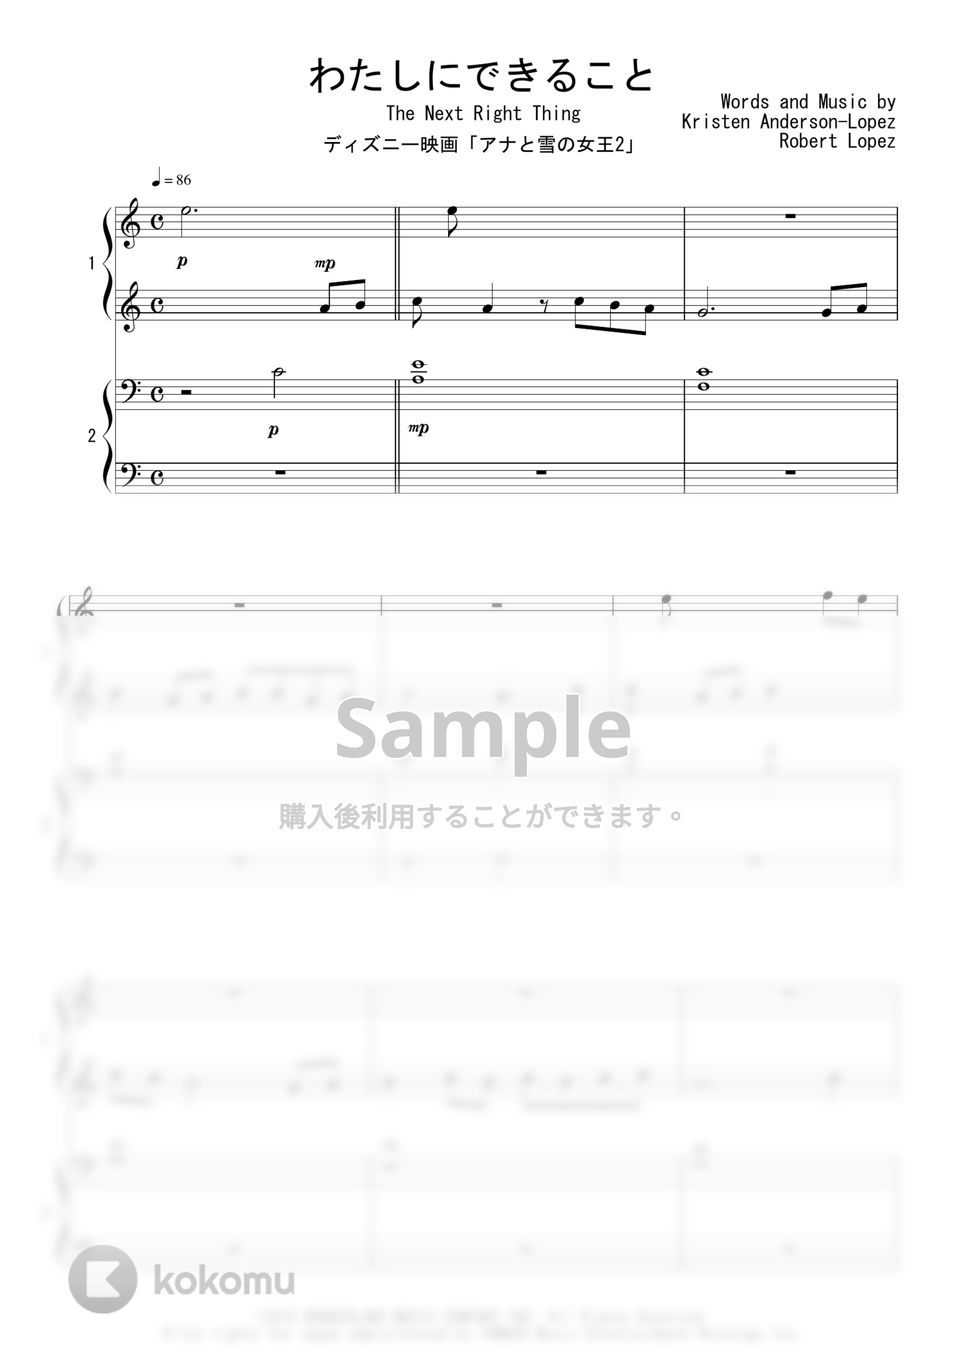 ディズニー映画「アナと雪の女王2」 - わたしにできること (ピアノ連弾) by Peony